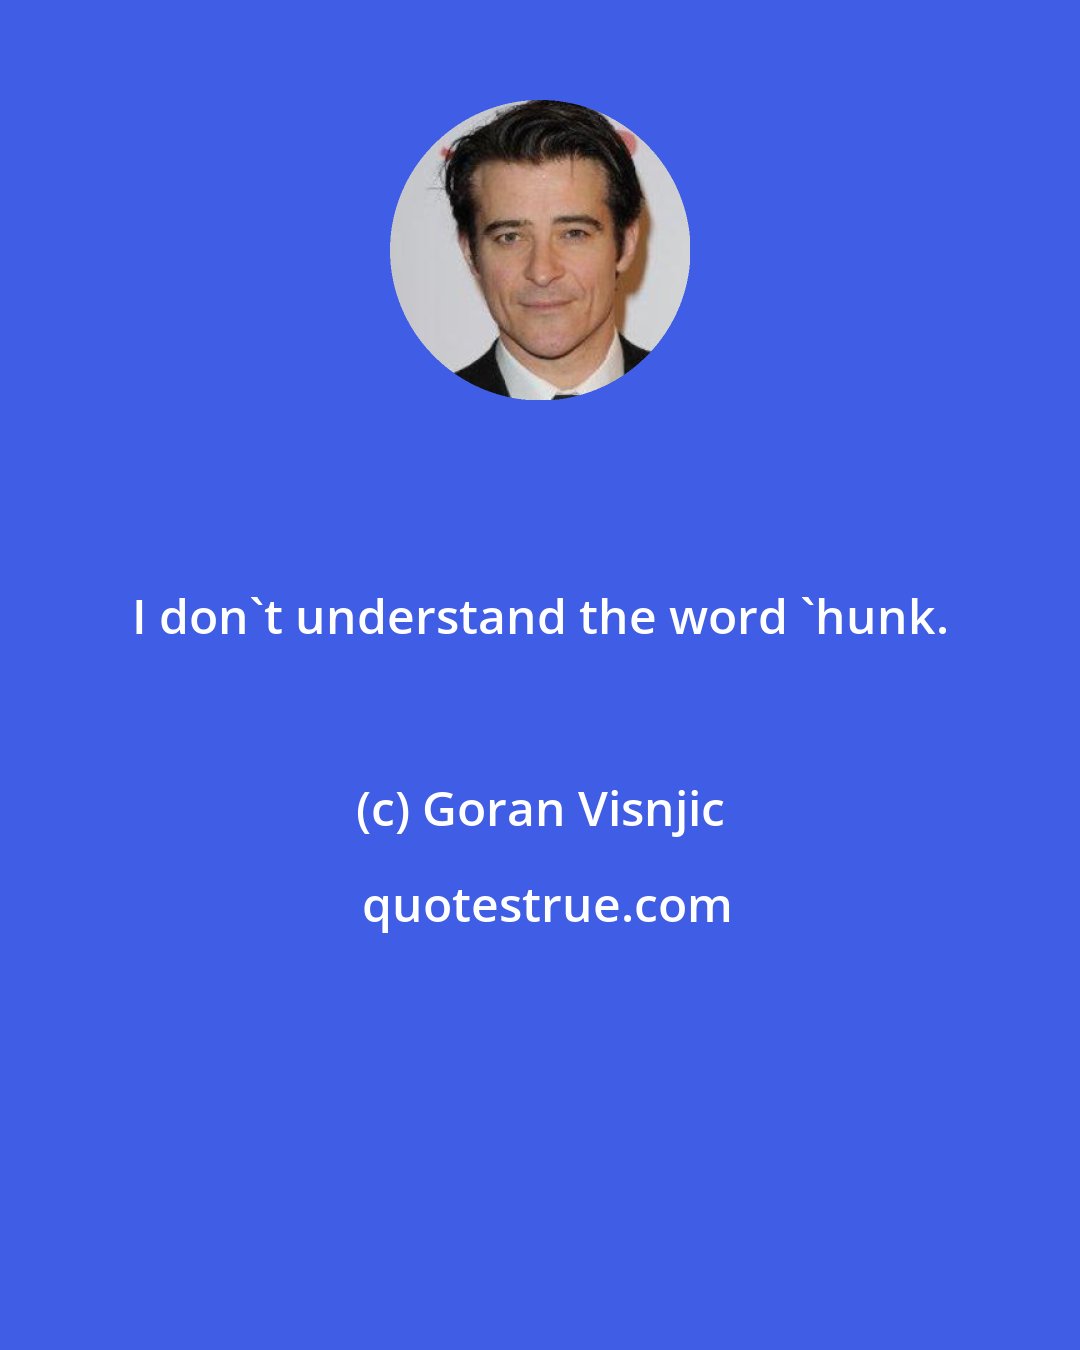 Goran Visnjic: I don't understand the word 'hunk.